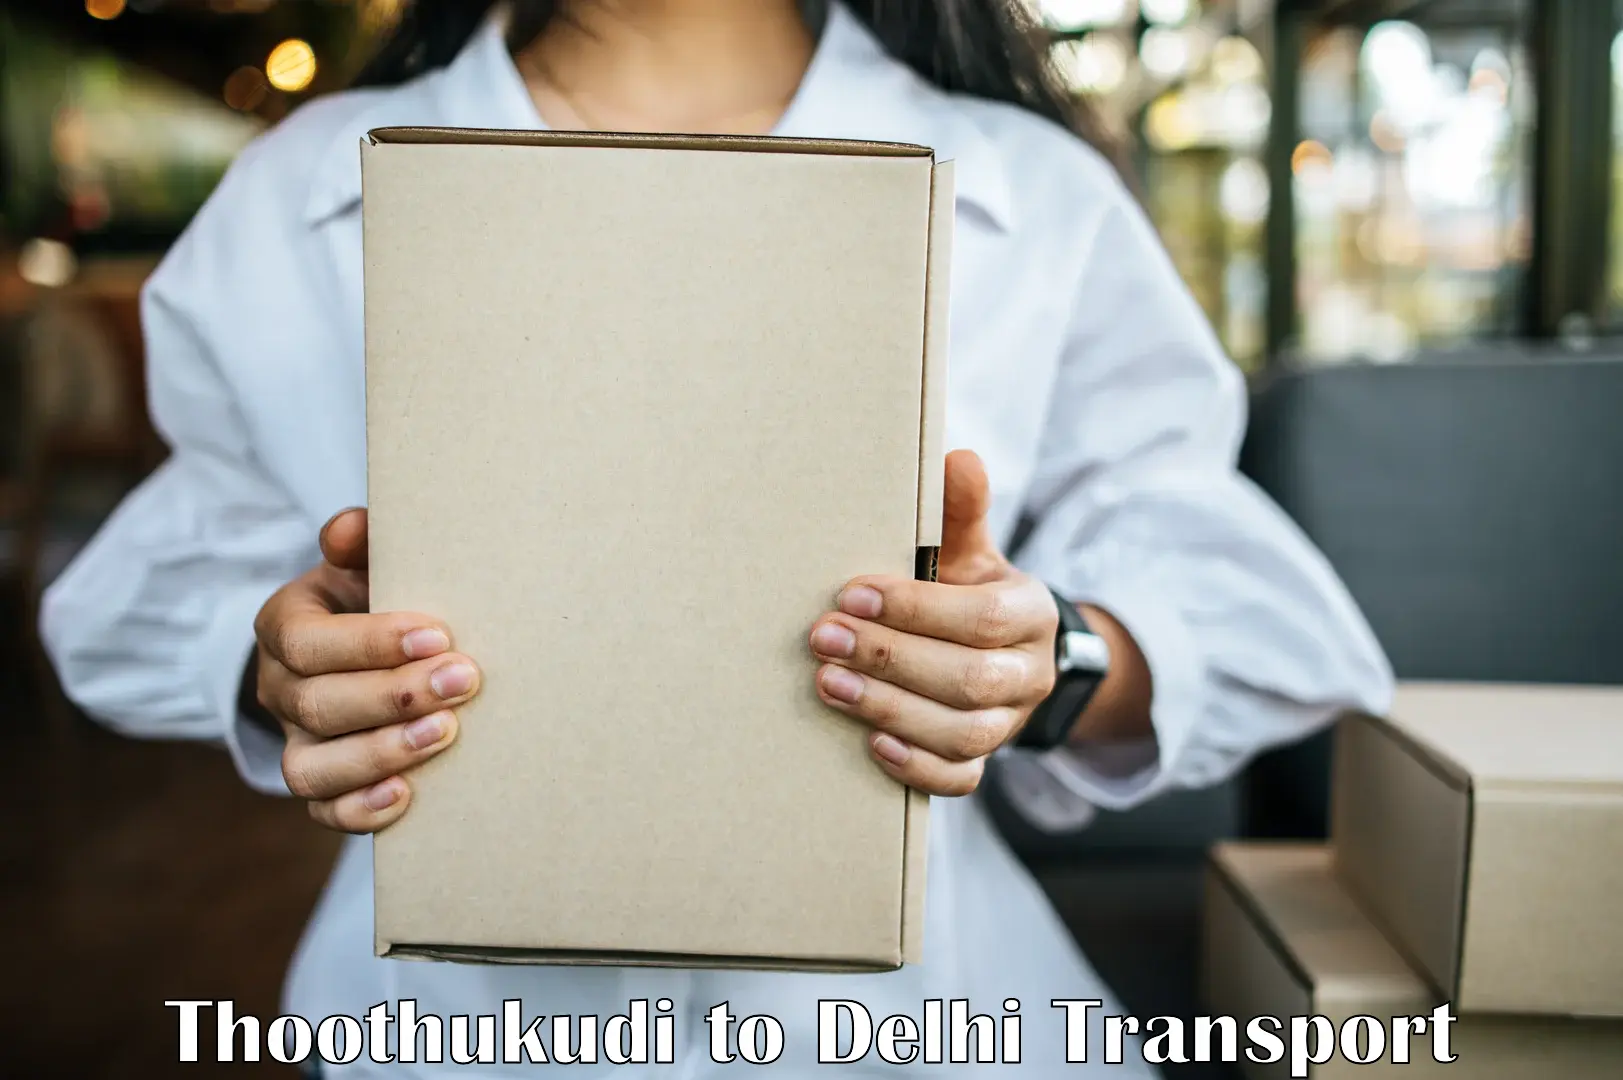 Online transport service Thoothukudi to Jamia Millia Islamia New Delhi